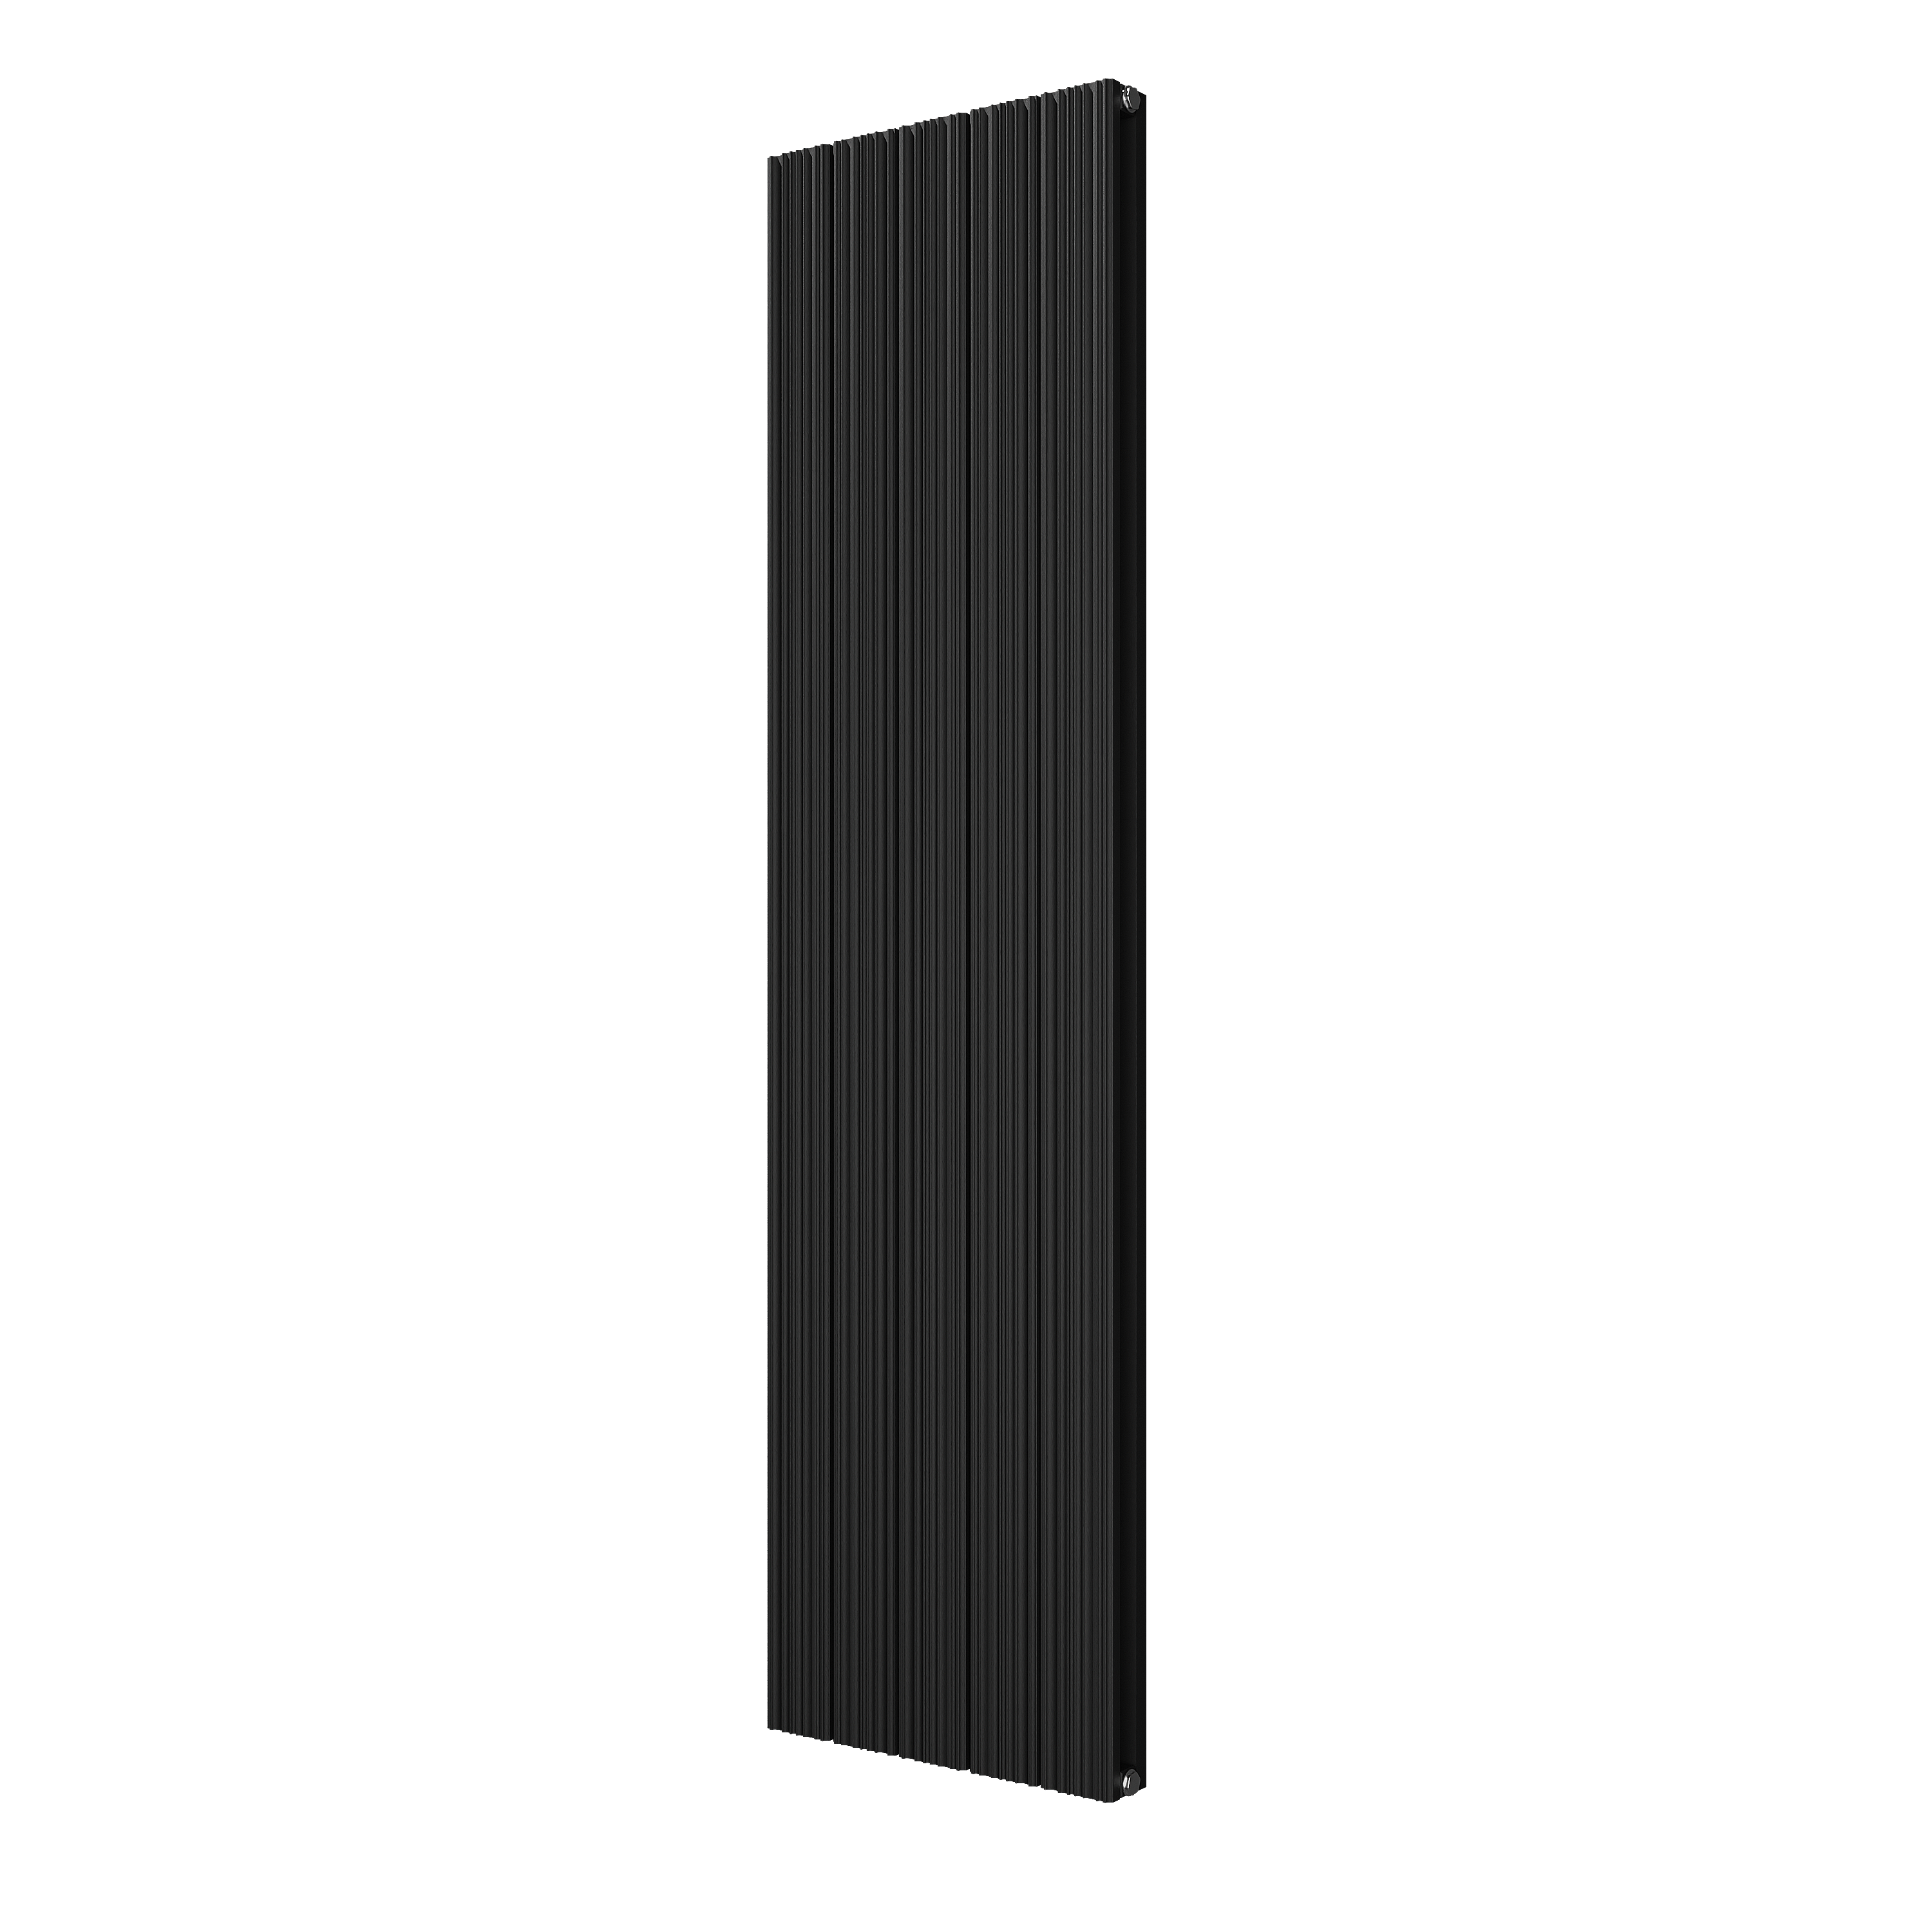 VIPERA Mares dubbele handdoekradiator 47 x 180 cm centrale verwarming mat zwart zij- en middenaansluiting 1,550W